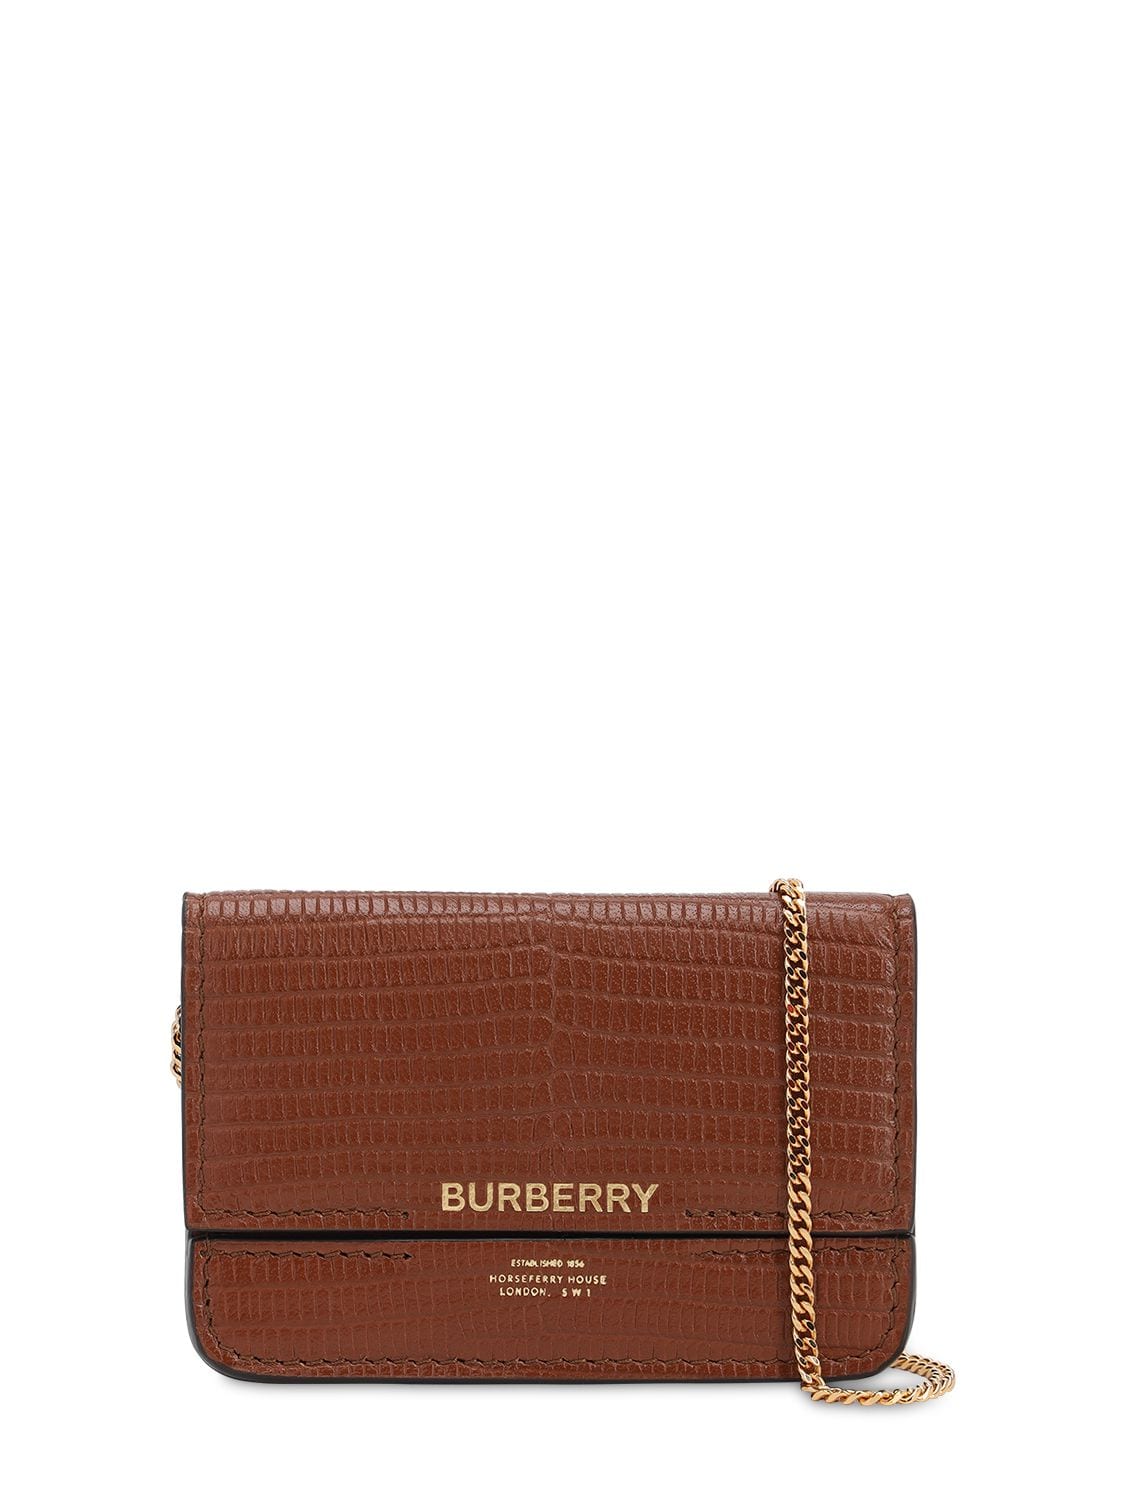 Burberry Jody Lizard Embossed Leather Wallet In Tan